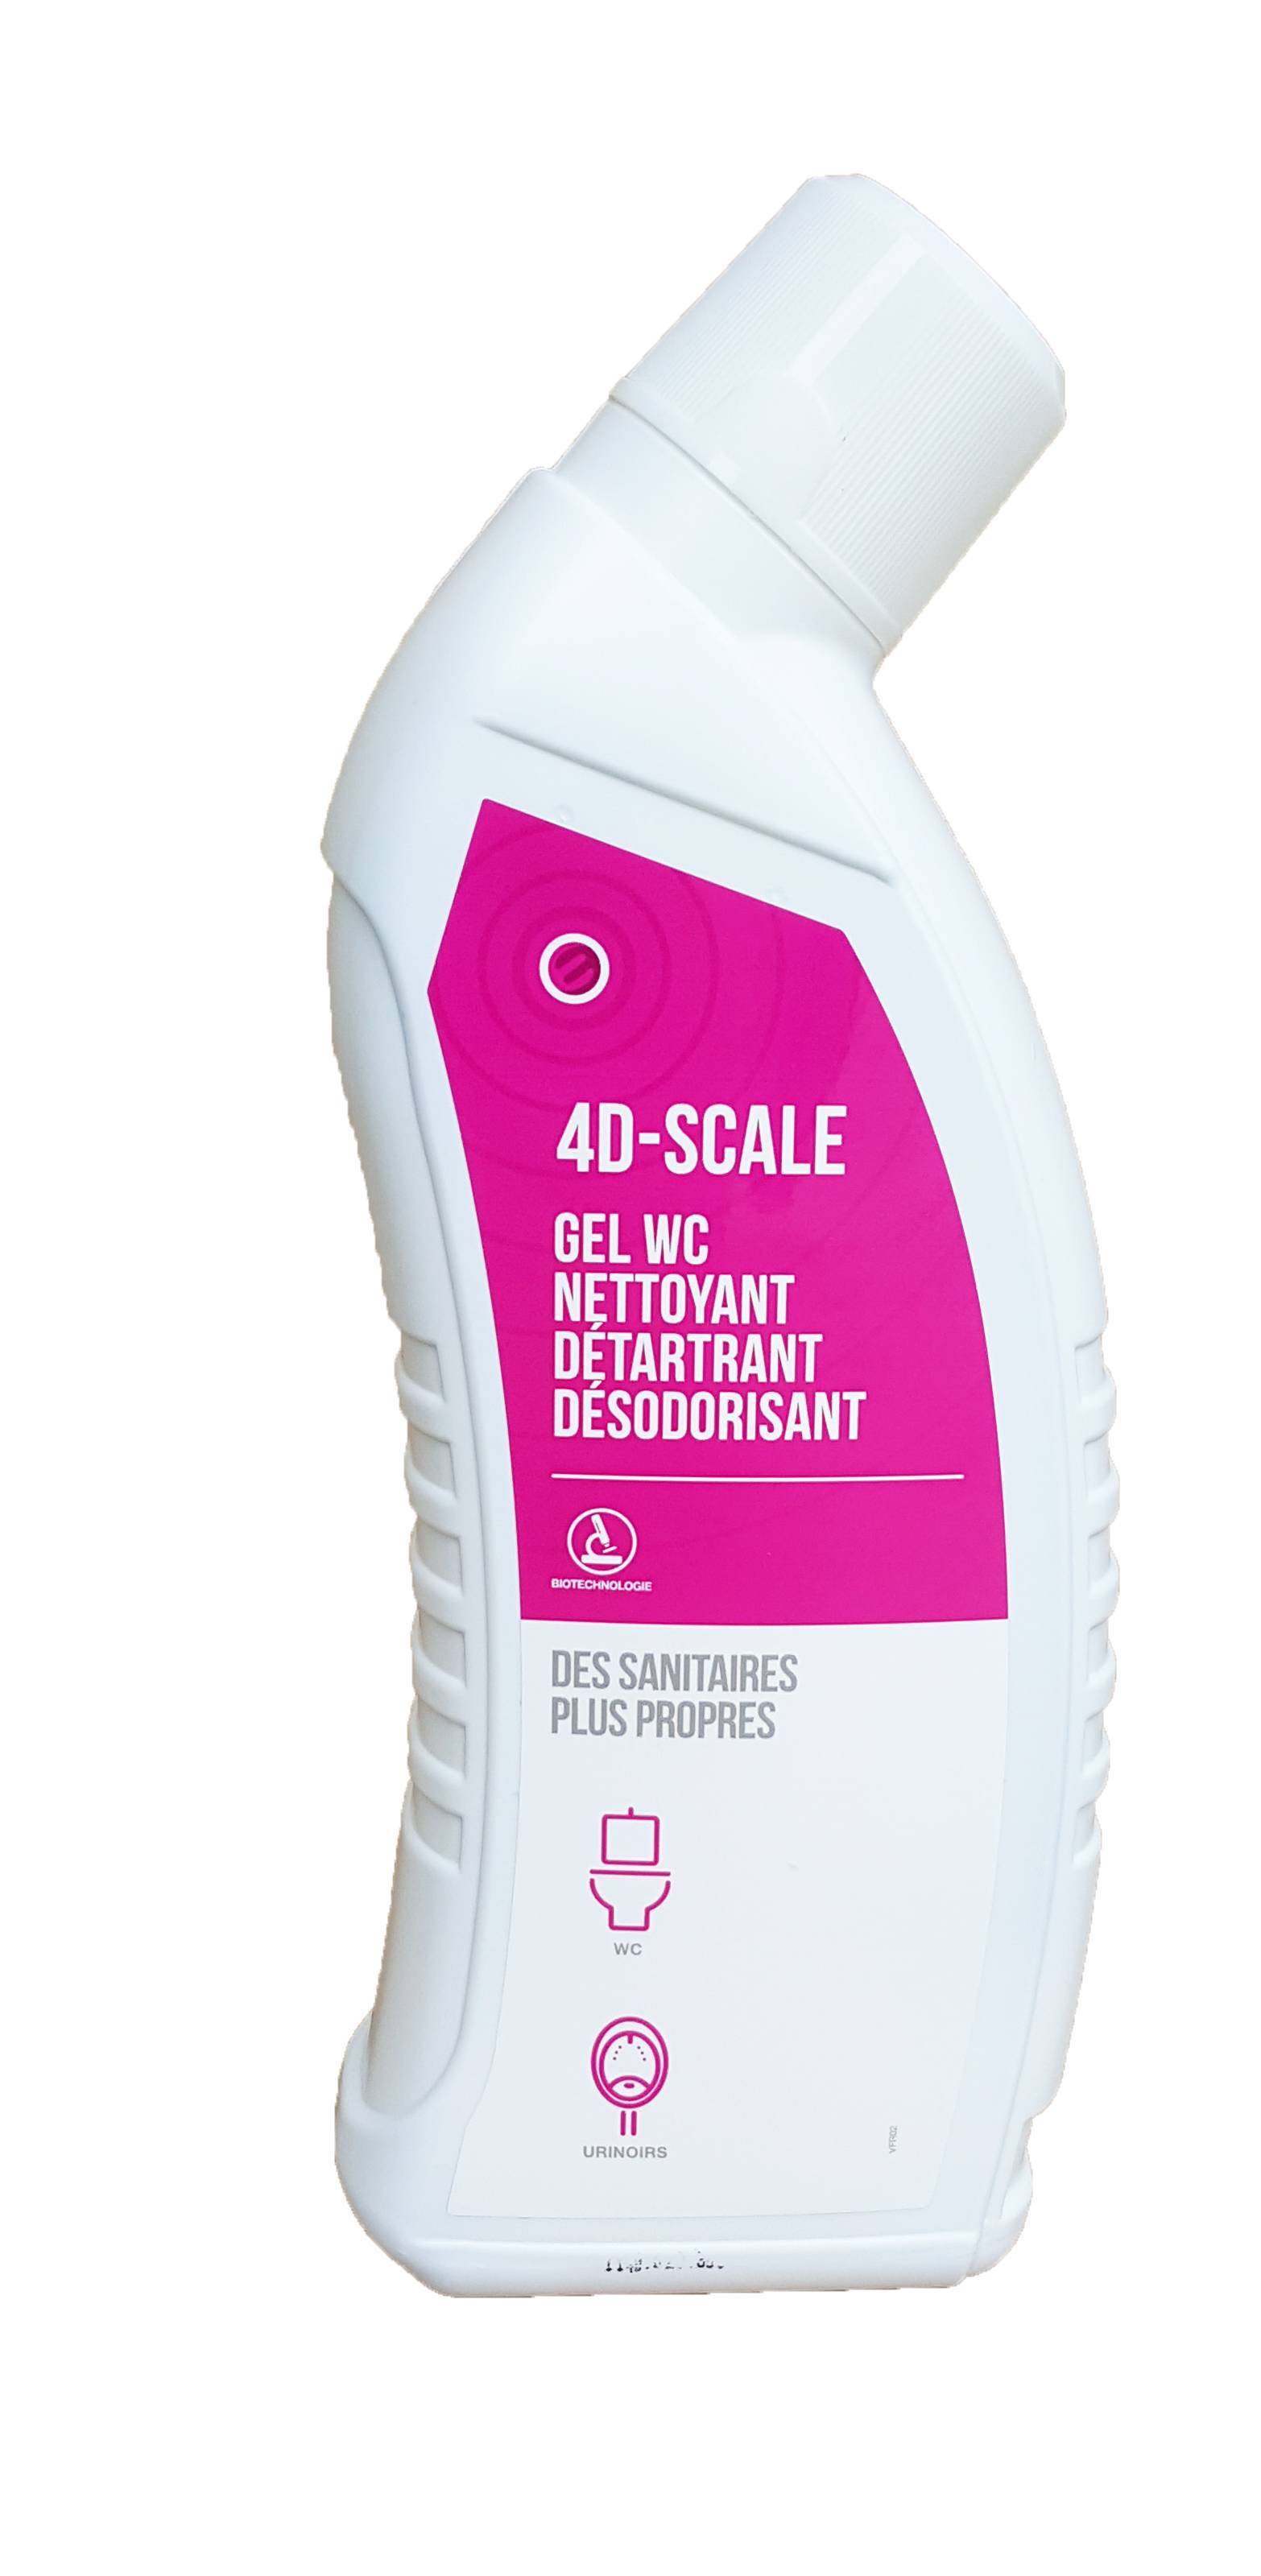 Gel WC Nettoyant détartrant désodorisant -4D -SCALE